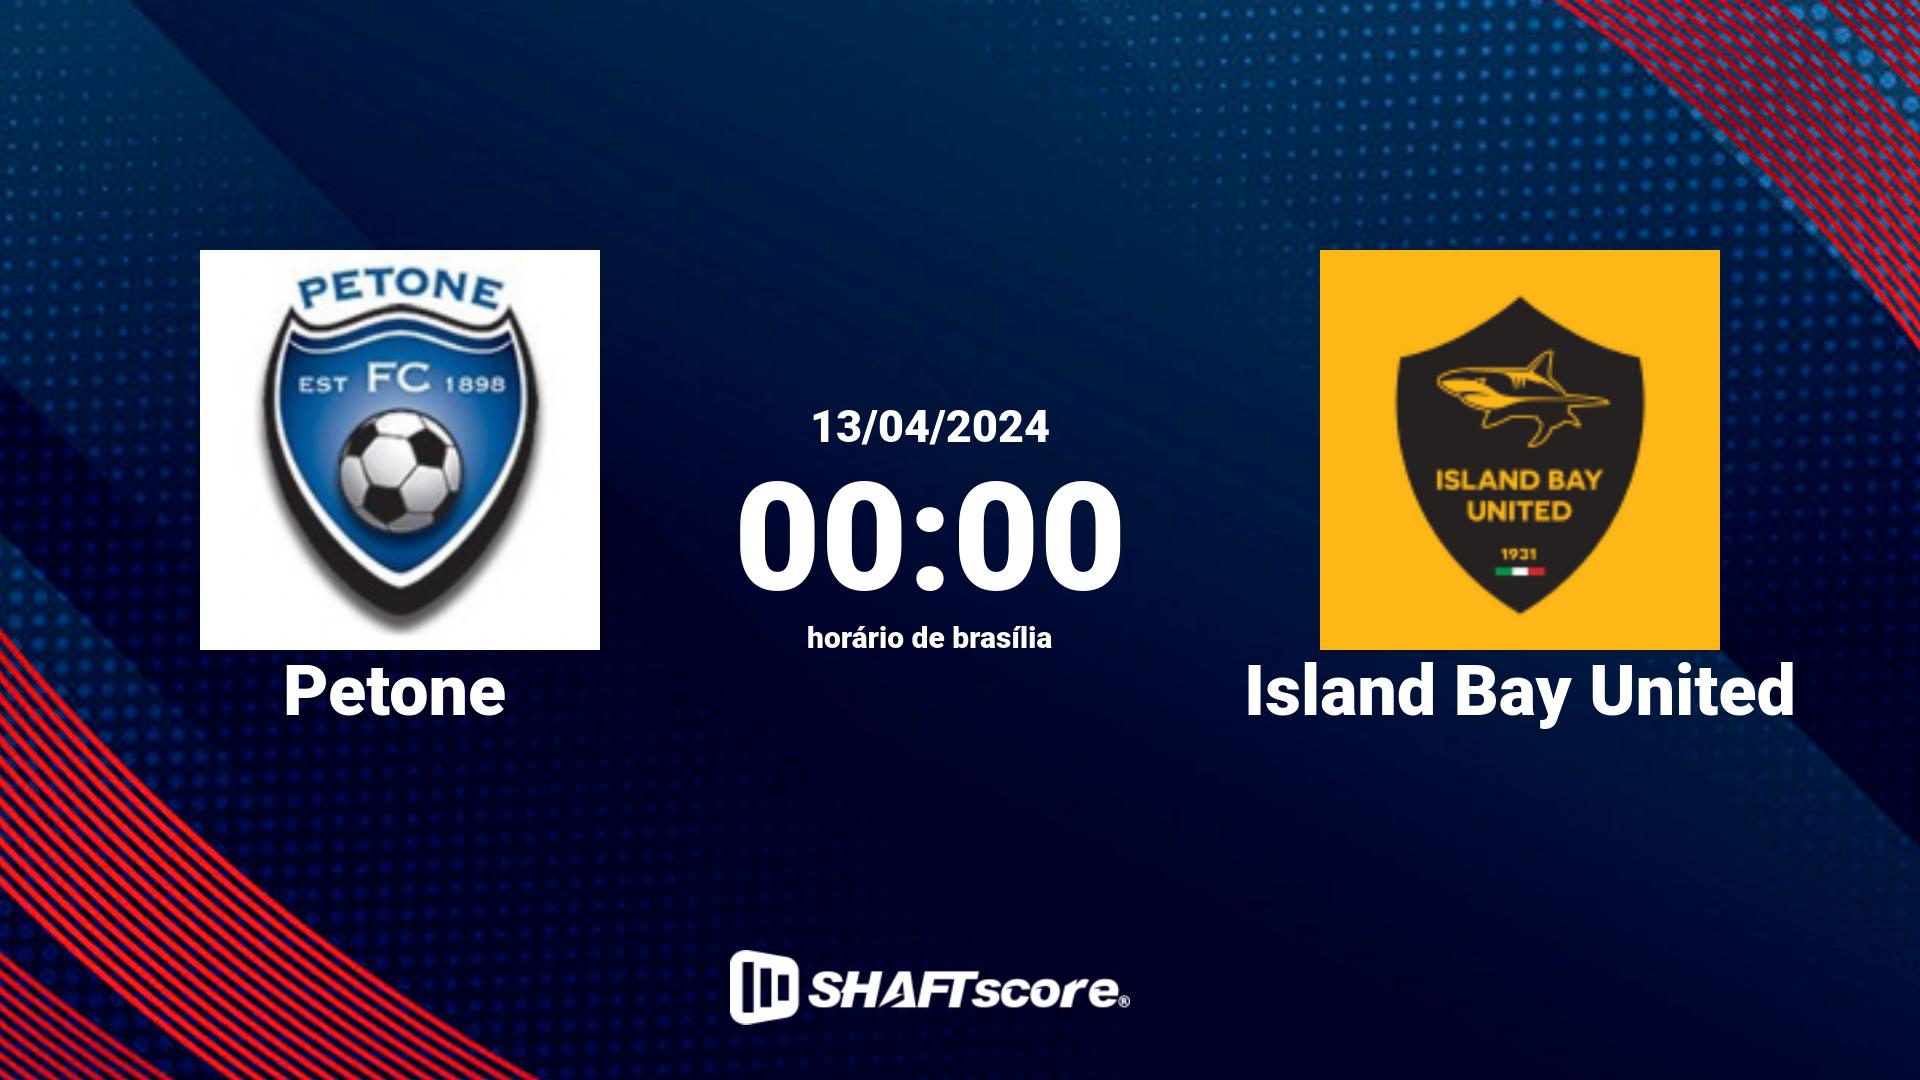 Estatísticas do jogo Petone vs Island Bay United 13.04 00:00